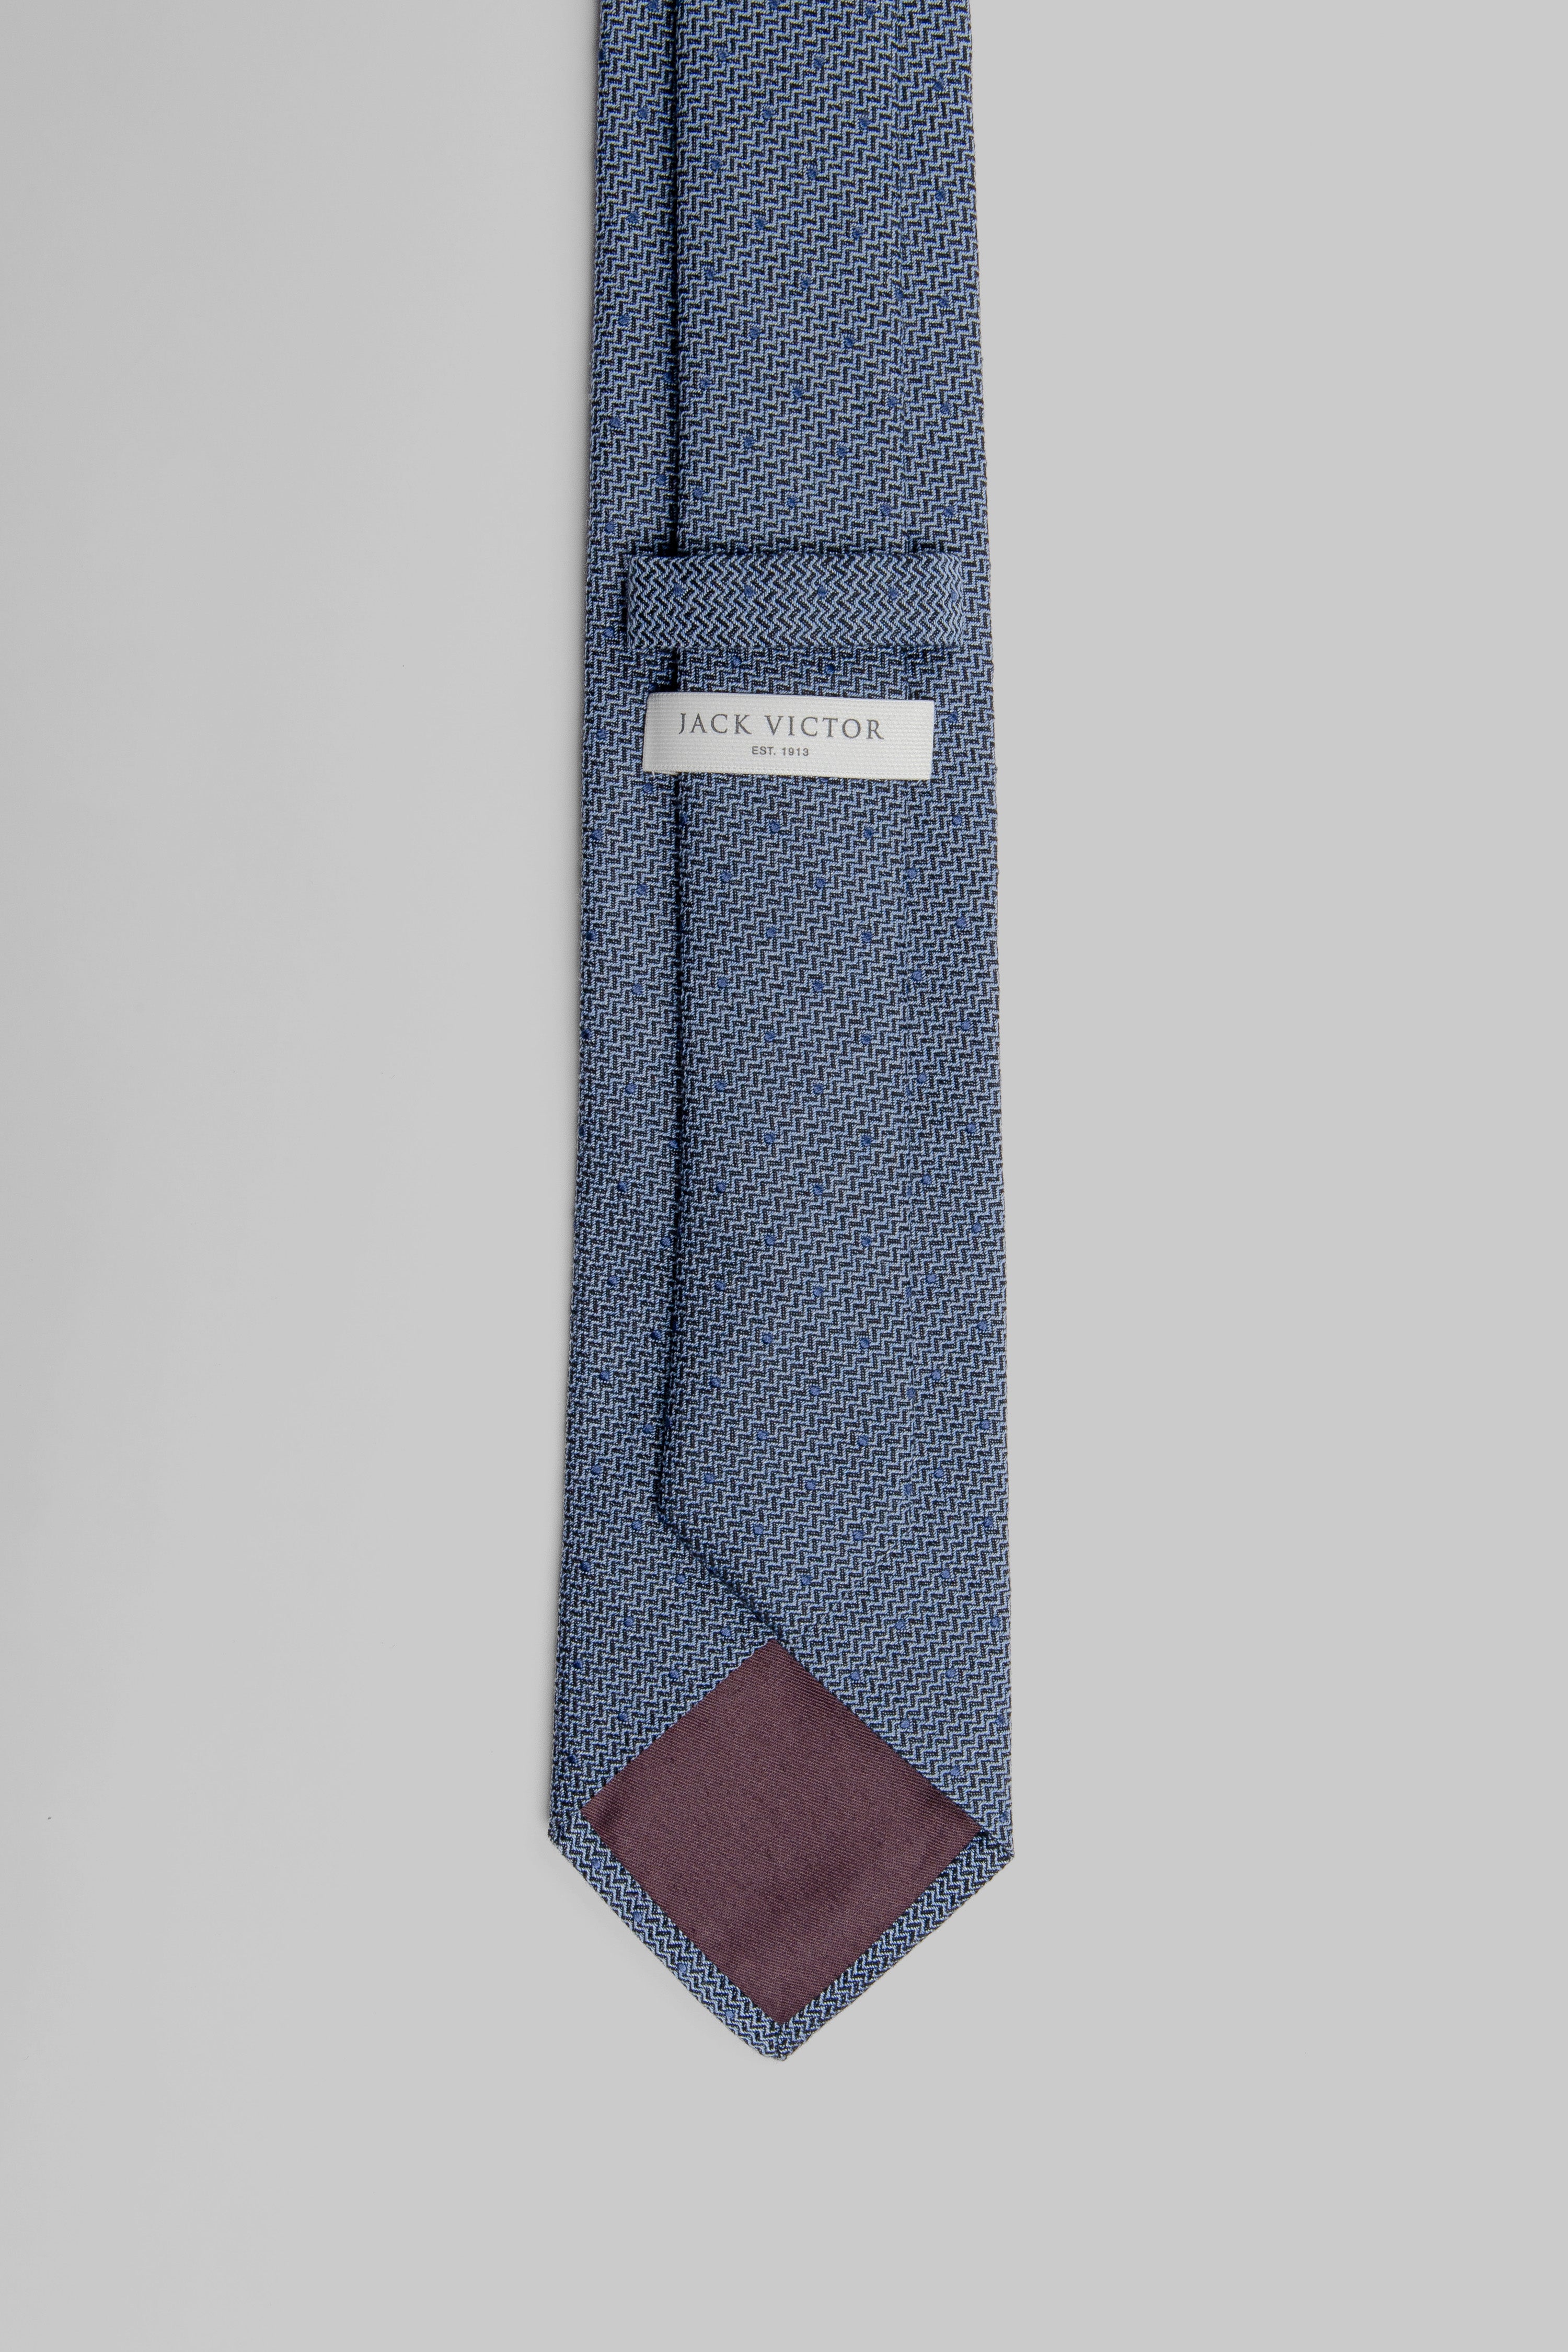 Vue alternative 2 Cravate tissée à pois en bleu